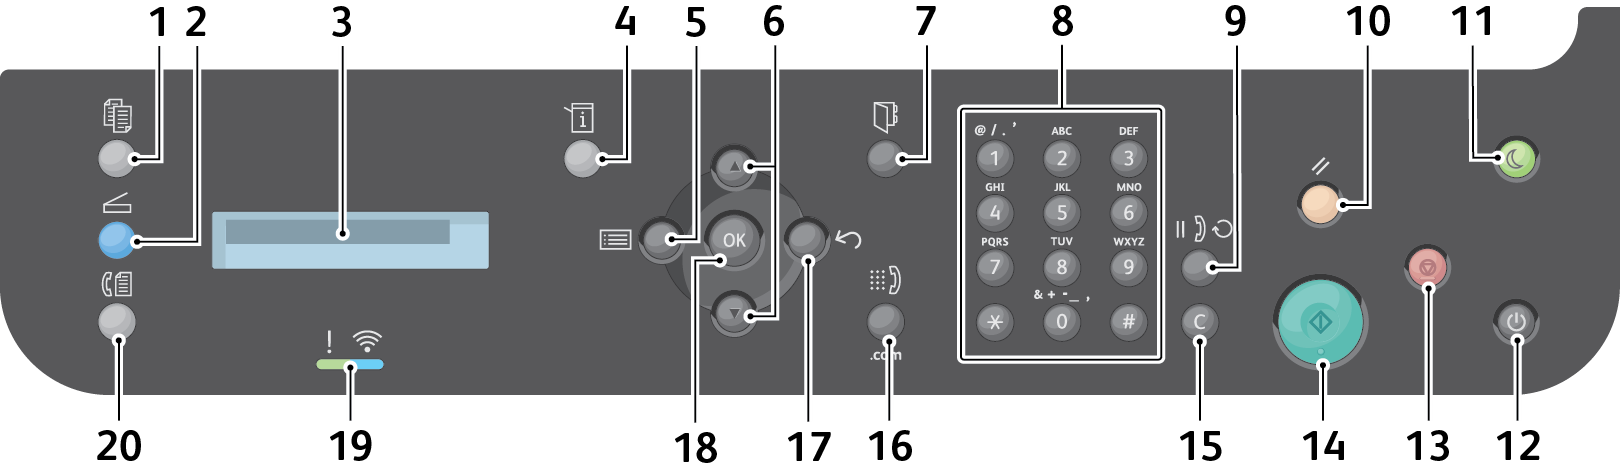 Επισκόπηση του Πίνακα ελέγχου Επισκόπηση του Πίνακα ελέγχου Ο πίνακας ελέγχου αποτελείται από μια οθόνη, ένα πληκτρολόγιο και τα πλήκτρα που πατάτε για τον έλεγχο των λειτουργιών που διατίθενται στον